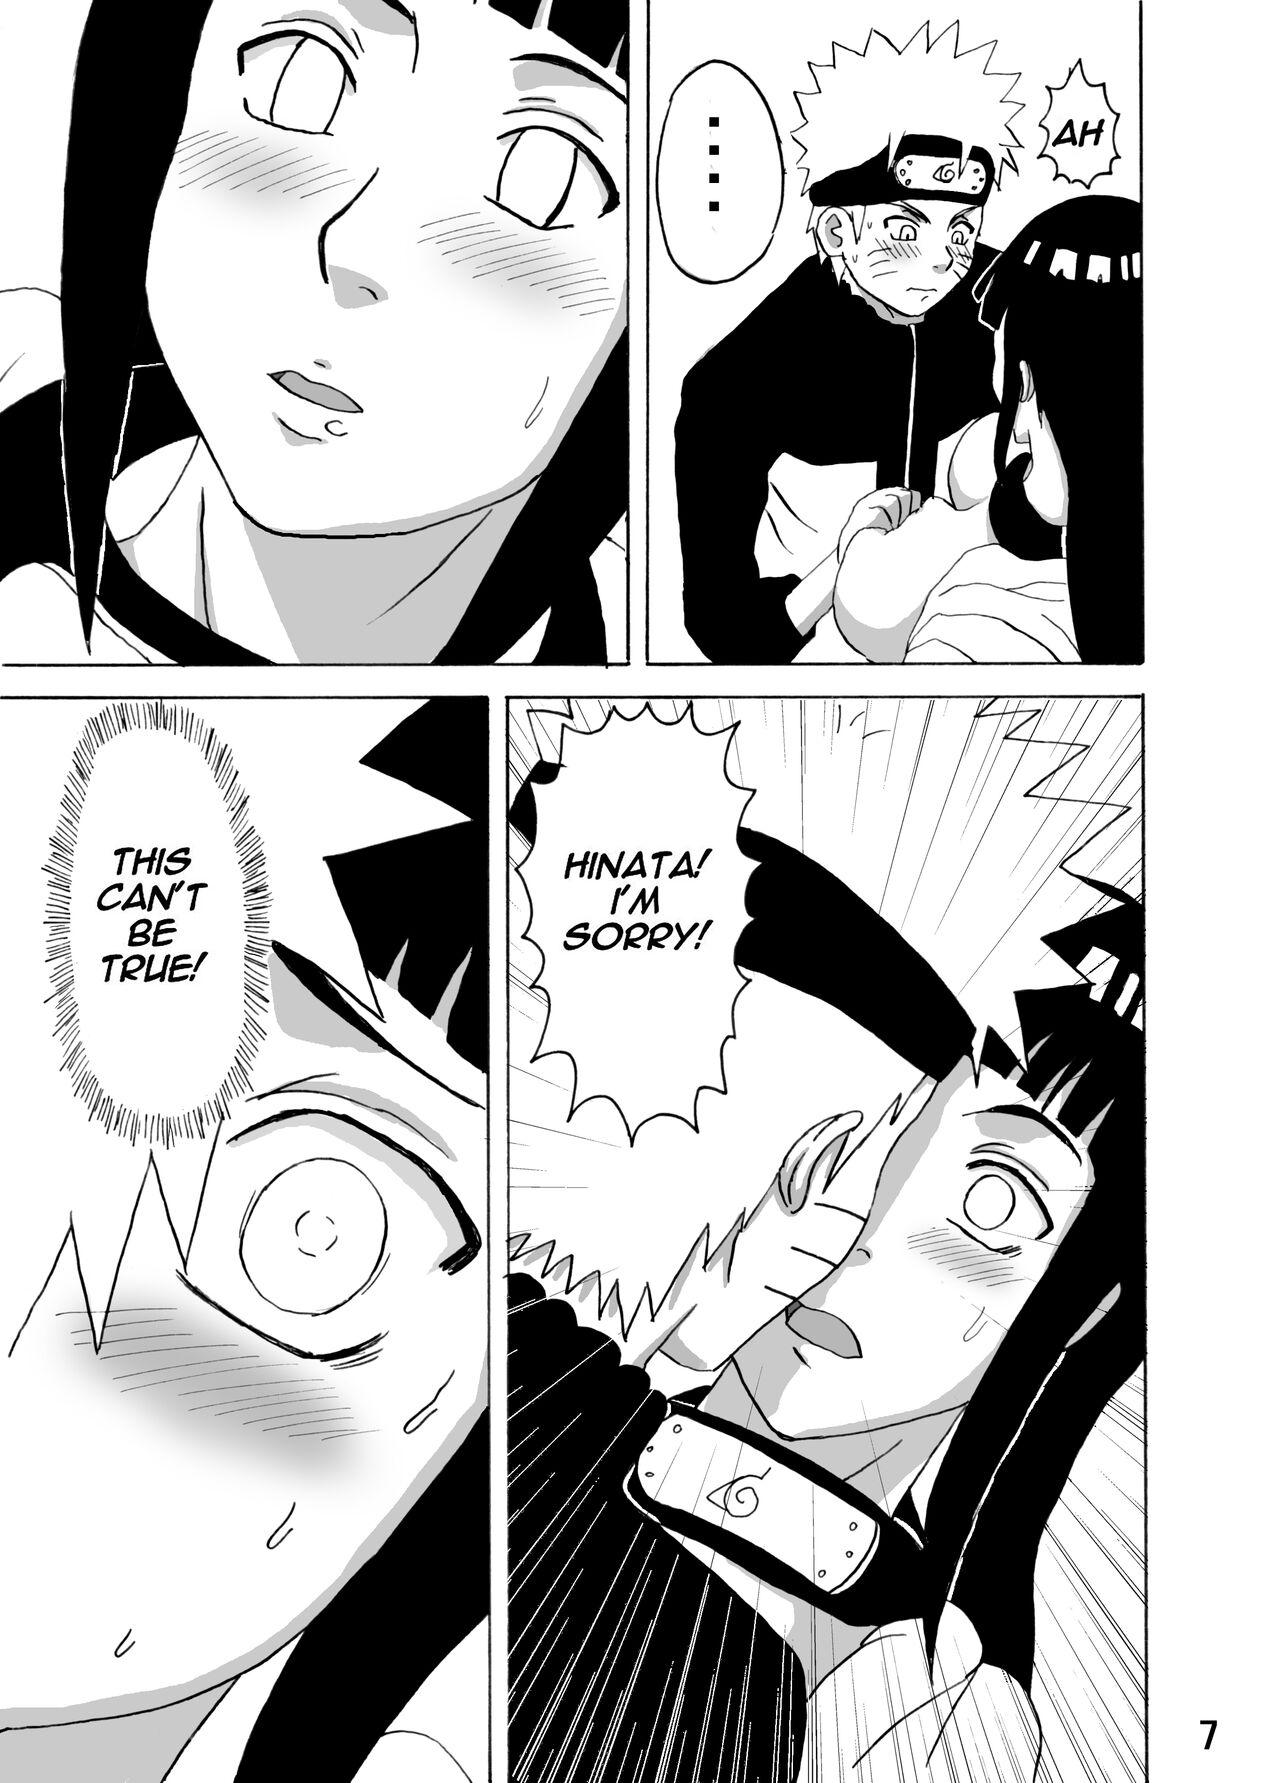 Gayfuck Hinata Ganbaru! | Hinata Fight! - Naruto Hottie - Page 8